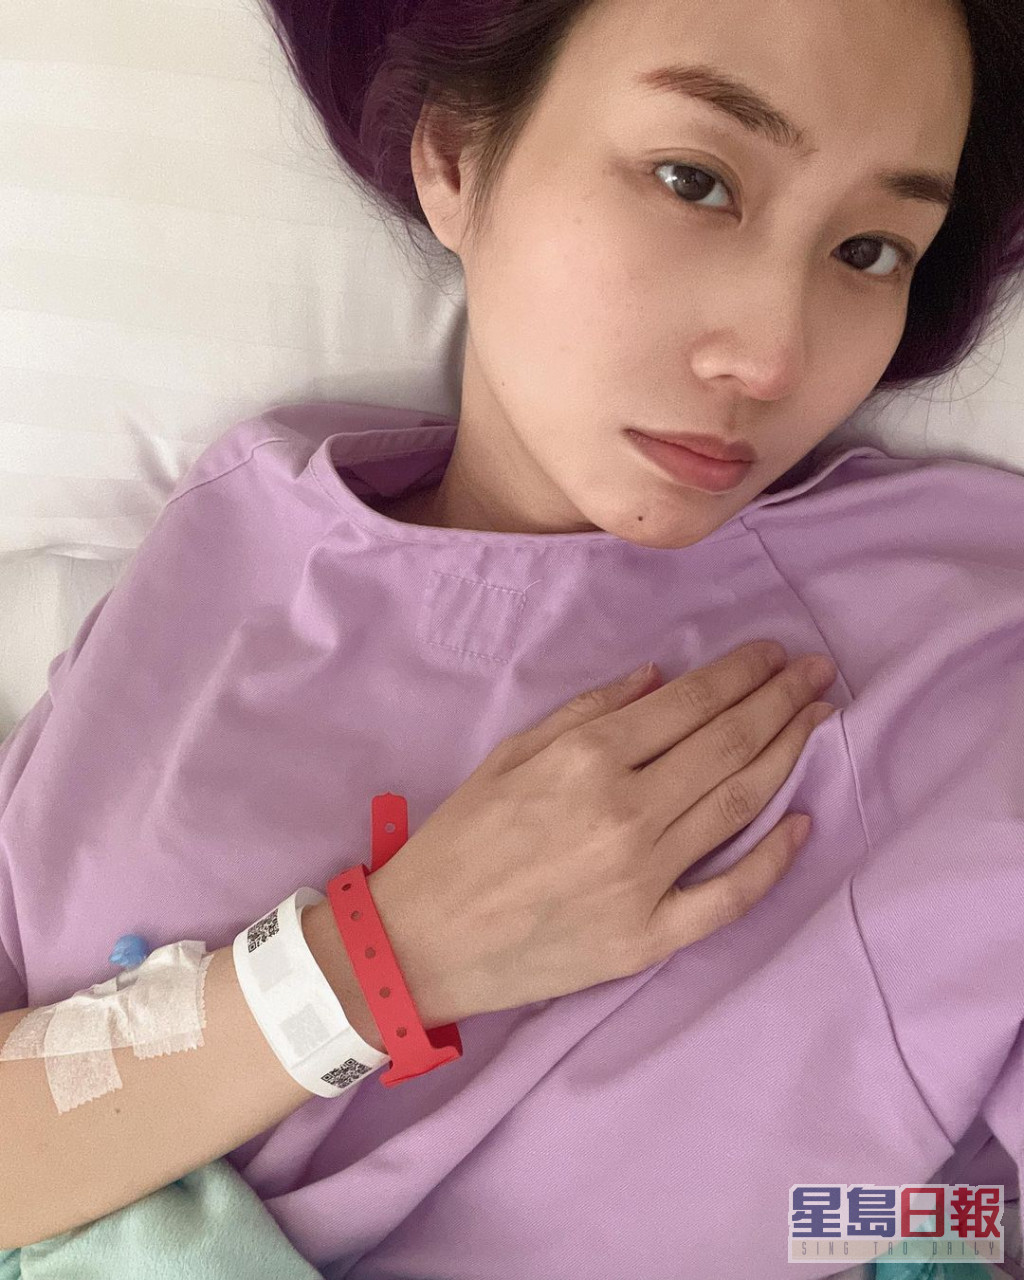 庄韵澄于IG宣布须接受终止怀孕手术。